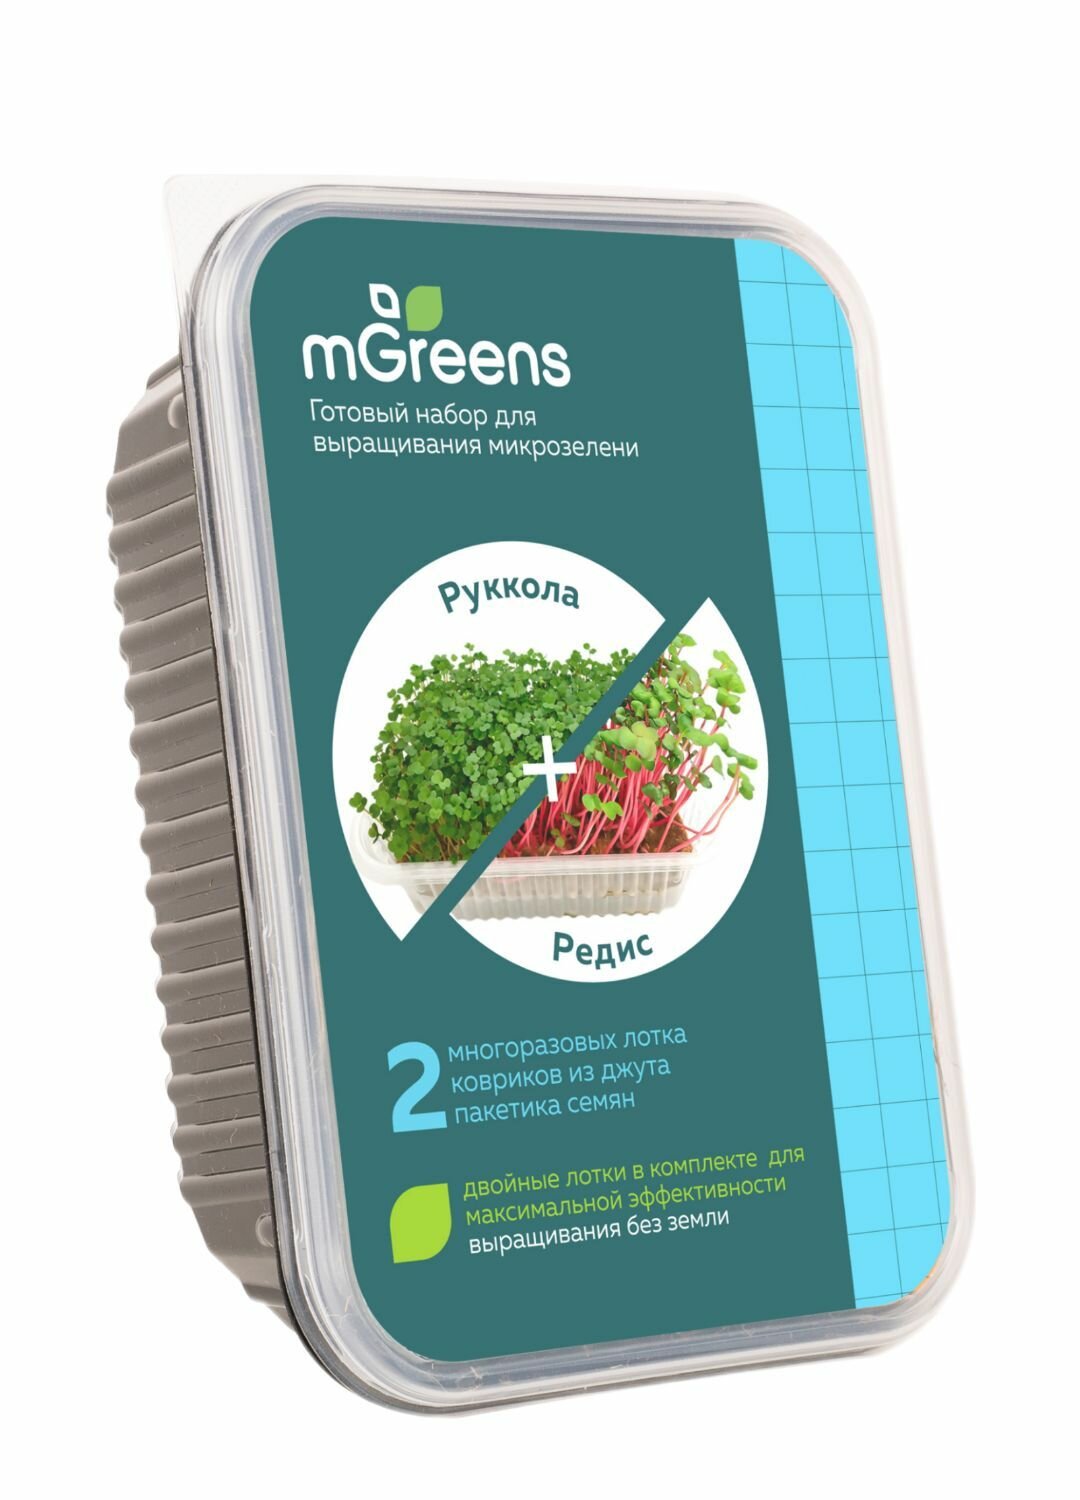 Набор для выращивания микрозелени /Руккола + Редис- два урожая микрозелени из одного набора для выращивания от mGreen's